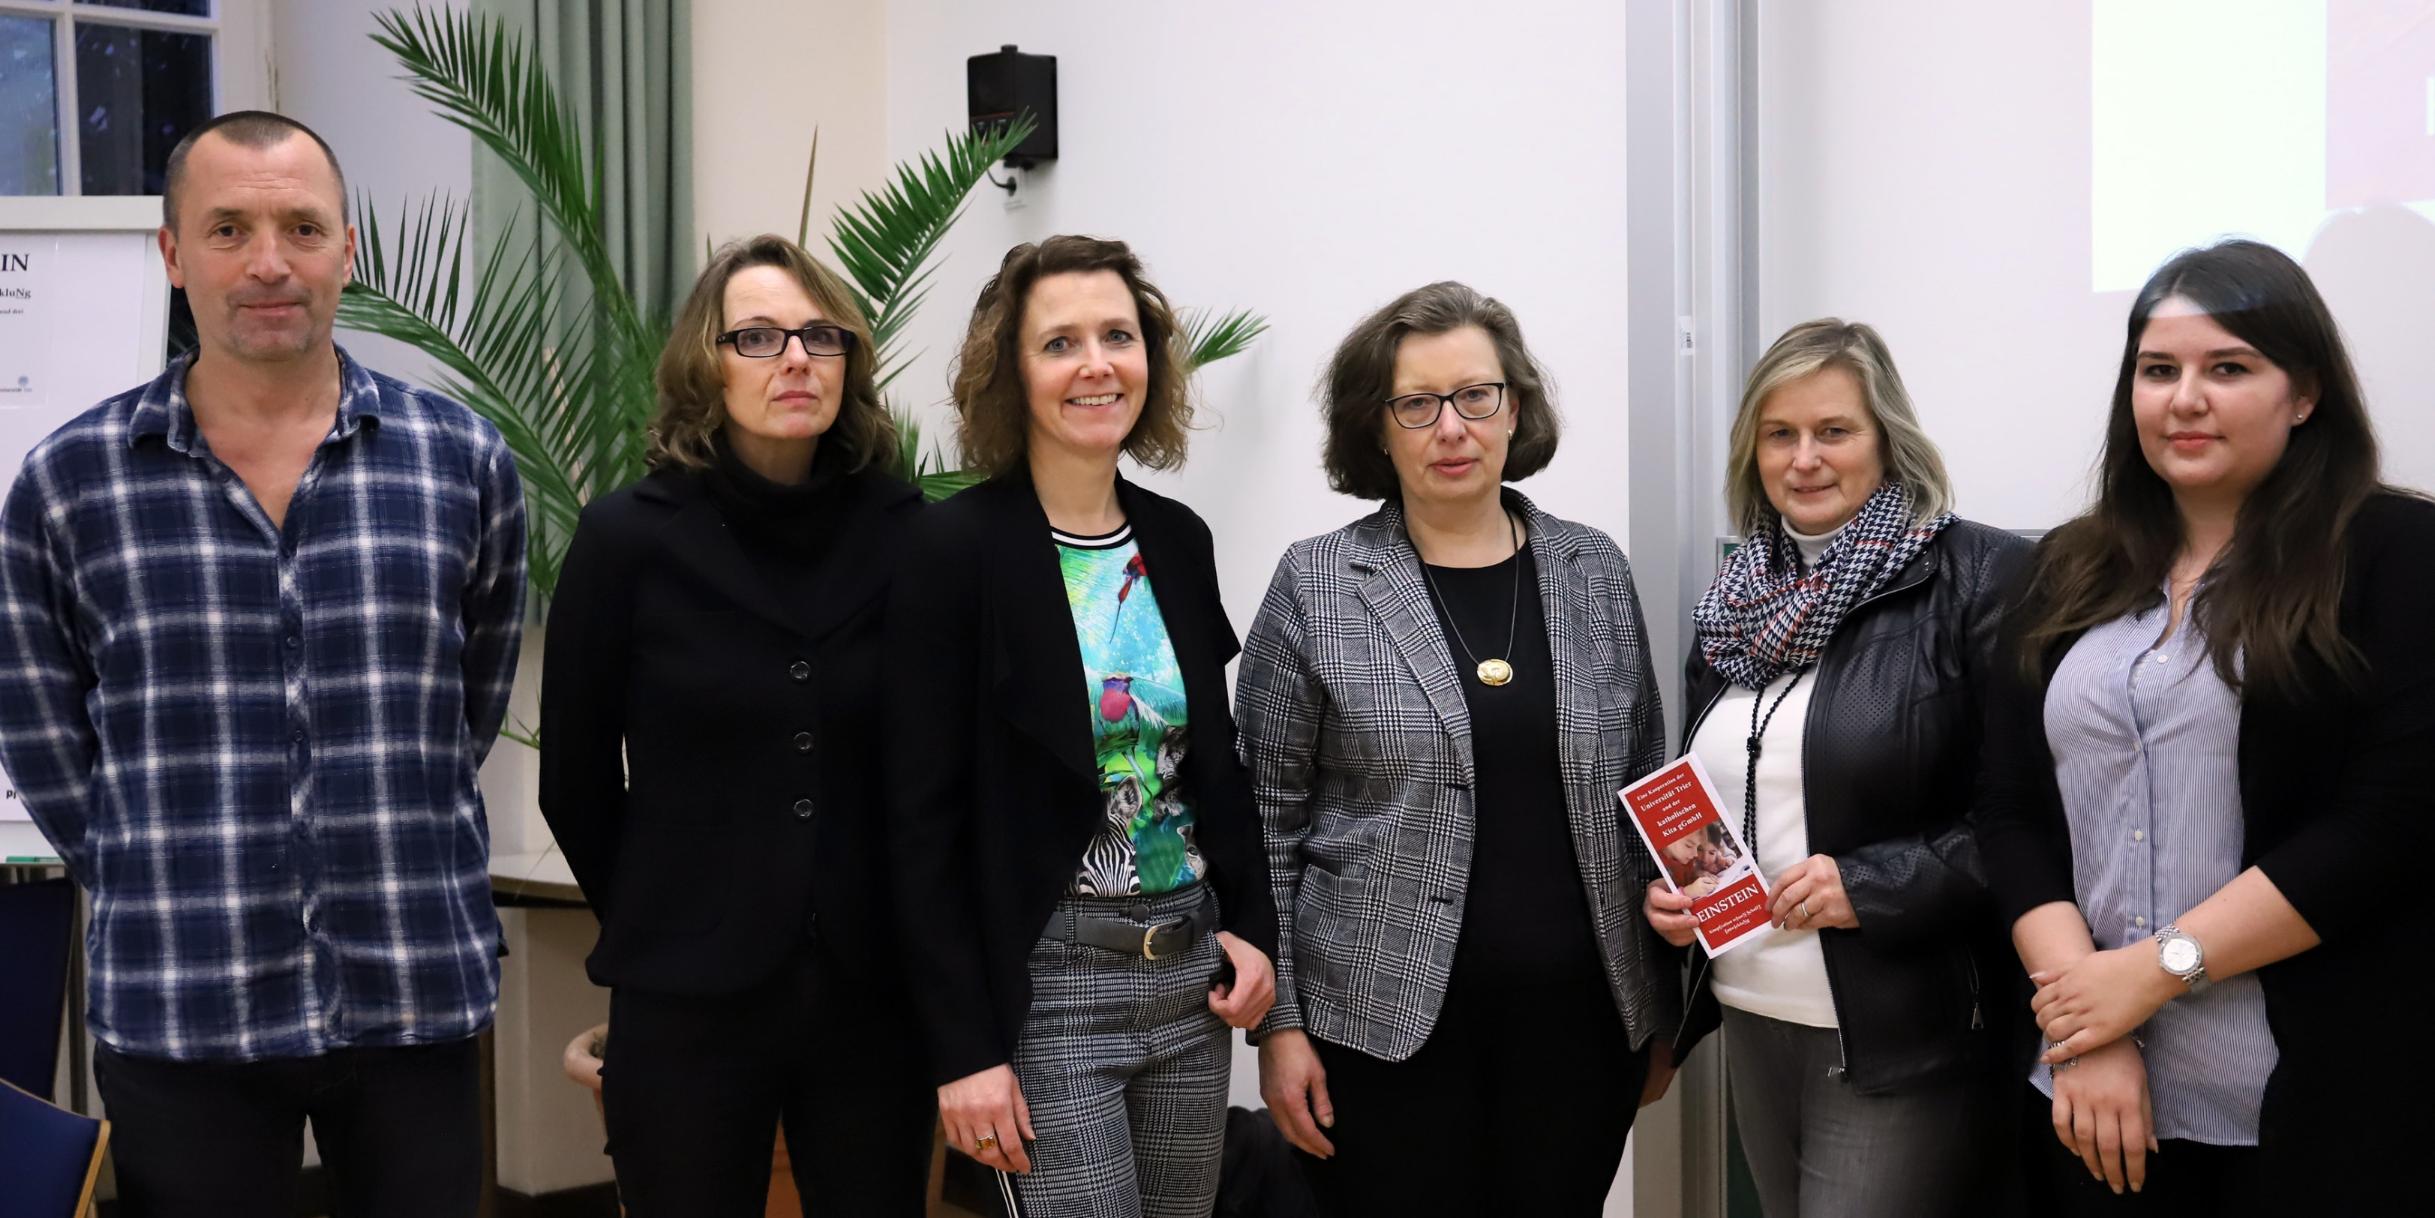 Prof. Jan Hofer, Prof. Eva Walther, Prof Tanja Hechler, Cordula Scheich, Geschäftsführerin der Kita gGmbH Trier, Pia Khoilar und Lena Künzer freuen sich über den Start des Kooperationsprojekts